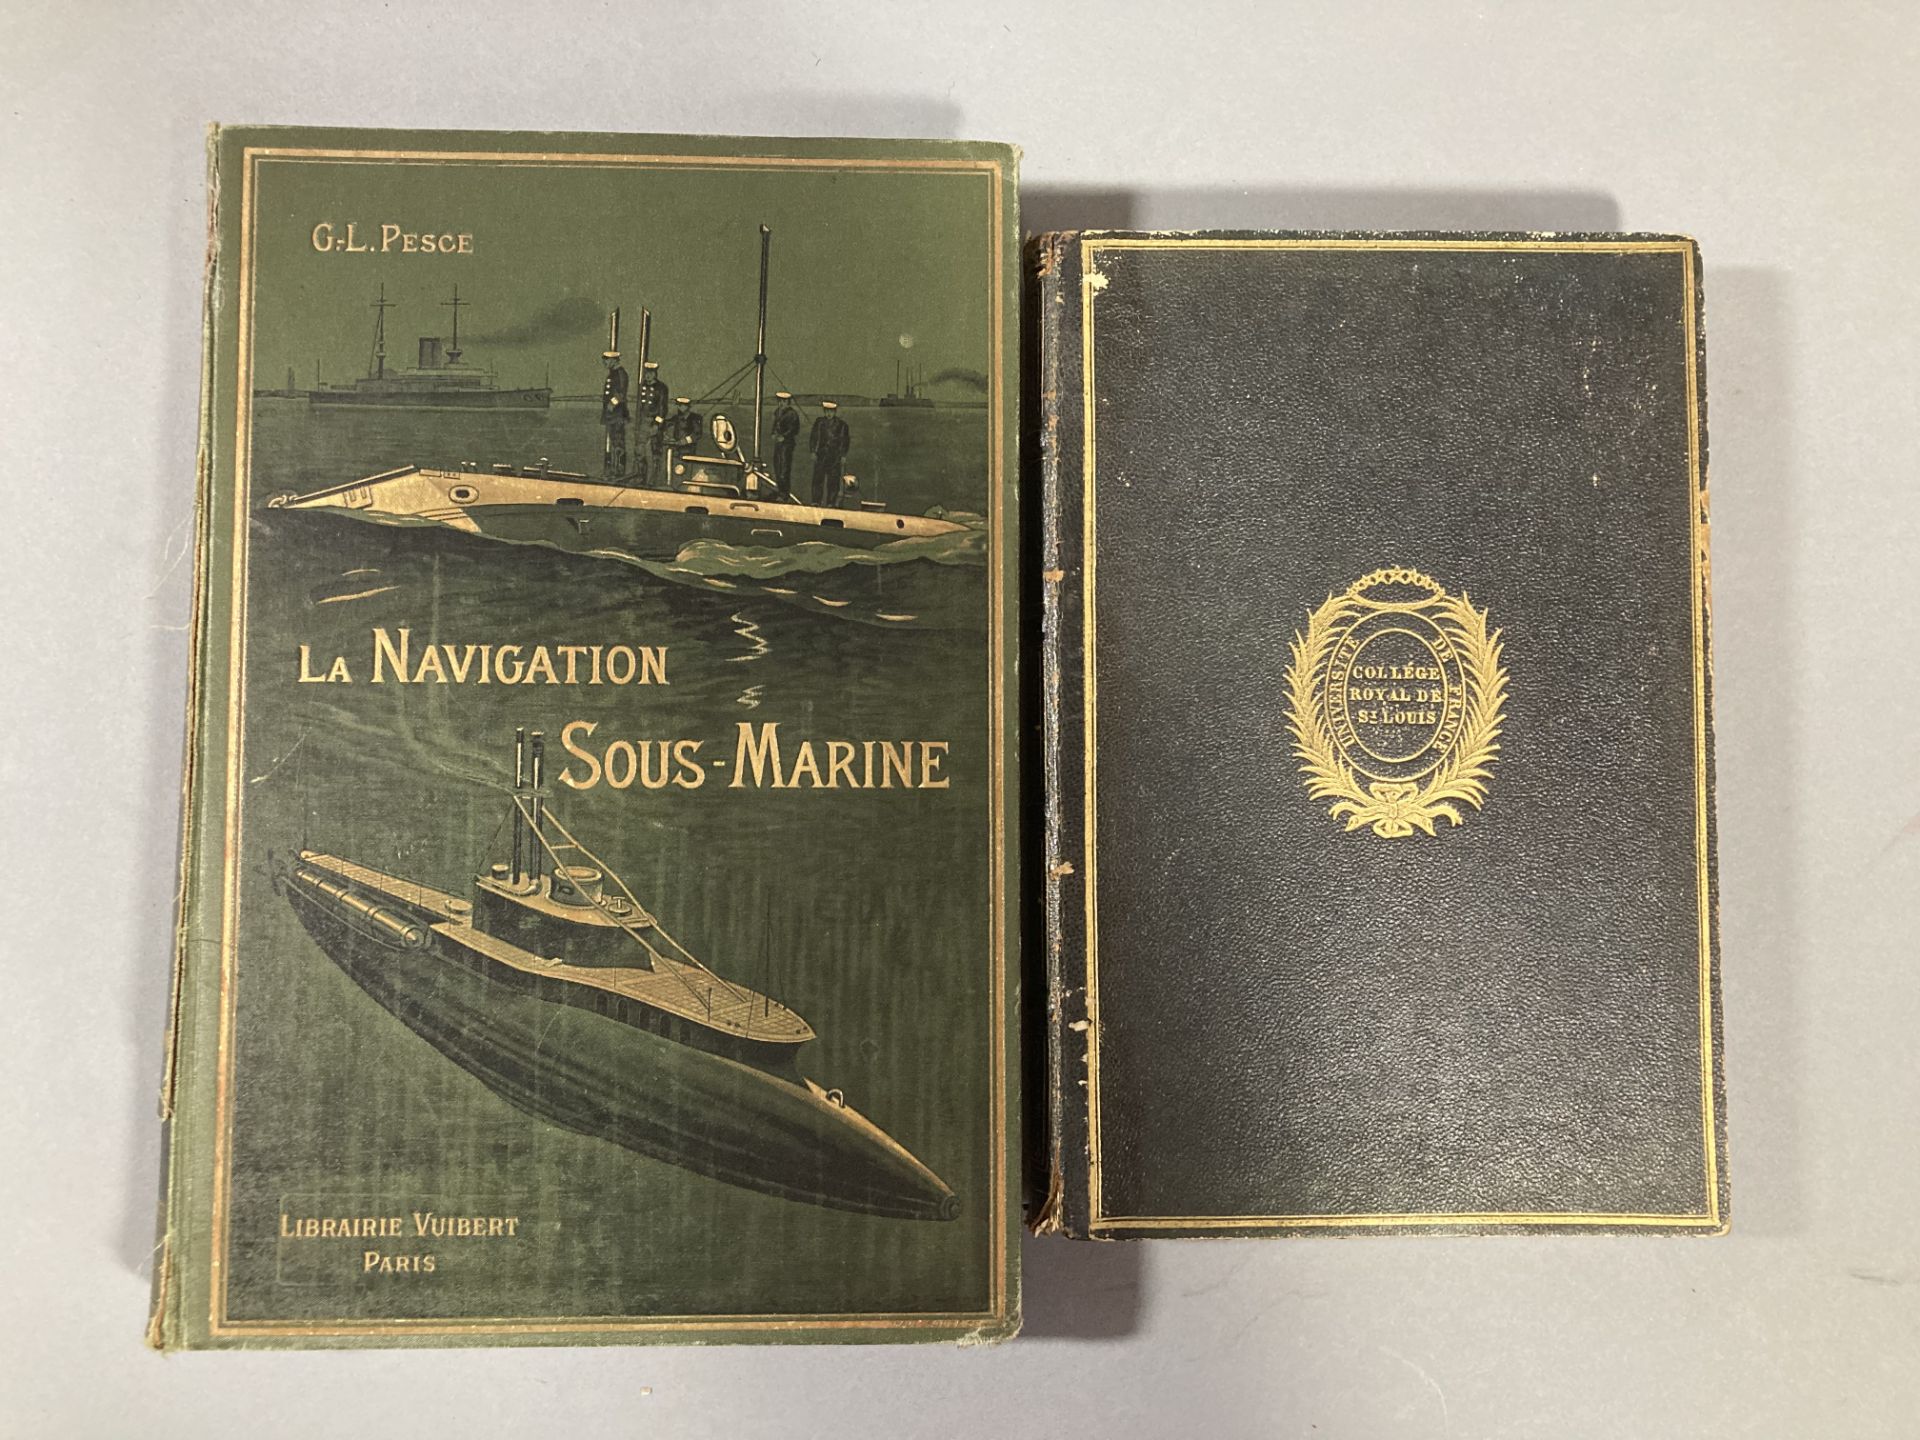 G.L. PESCE. La navigation sous-marine » Librairie Vuibert Paris, circa 1890.dos accidenté. On y